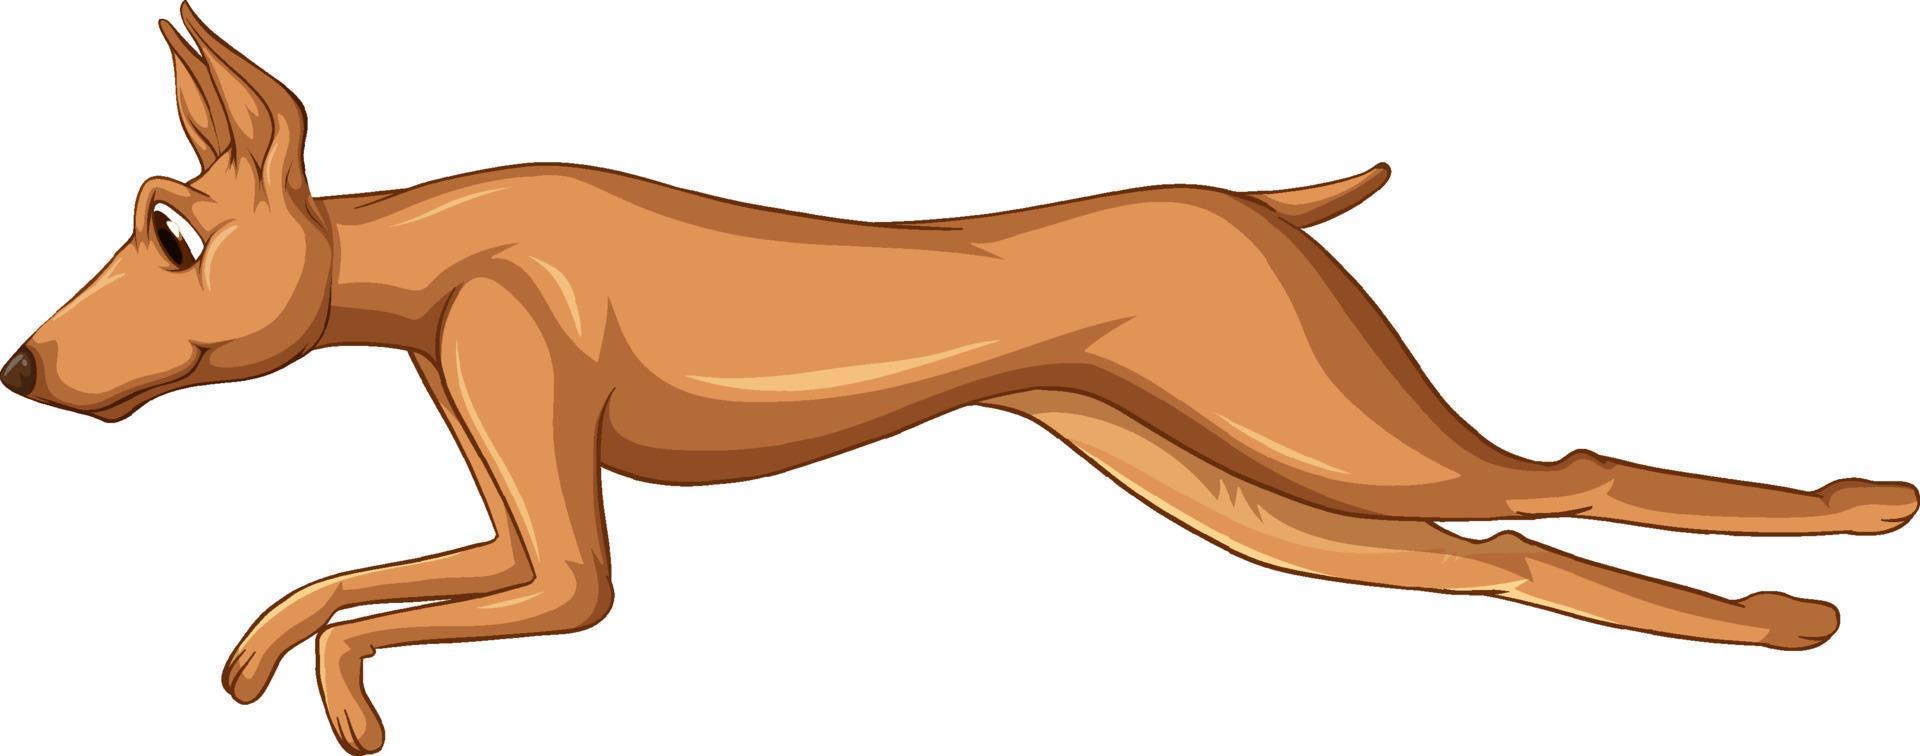 Caricature de chien doberman pinscher sur fond blanc vecteur